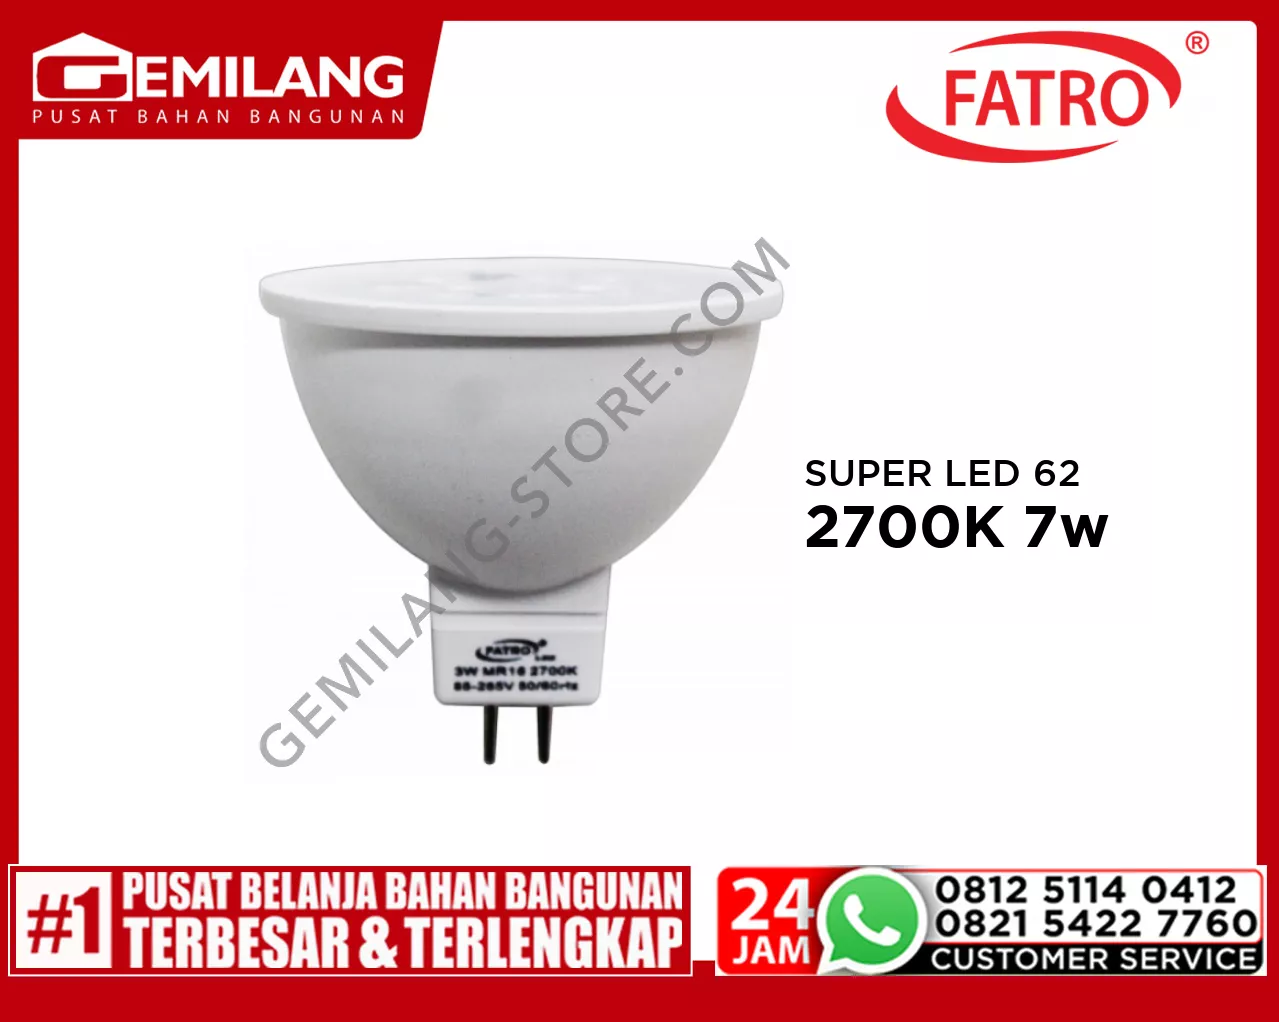 FATRO SUPER LED 60 MR16 220v 2700K 7w